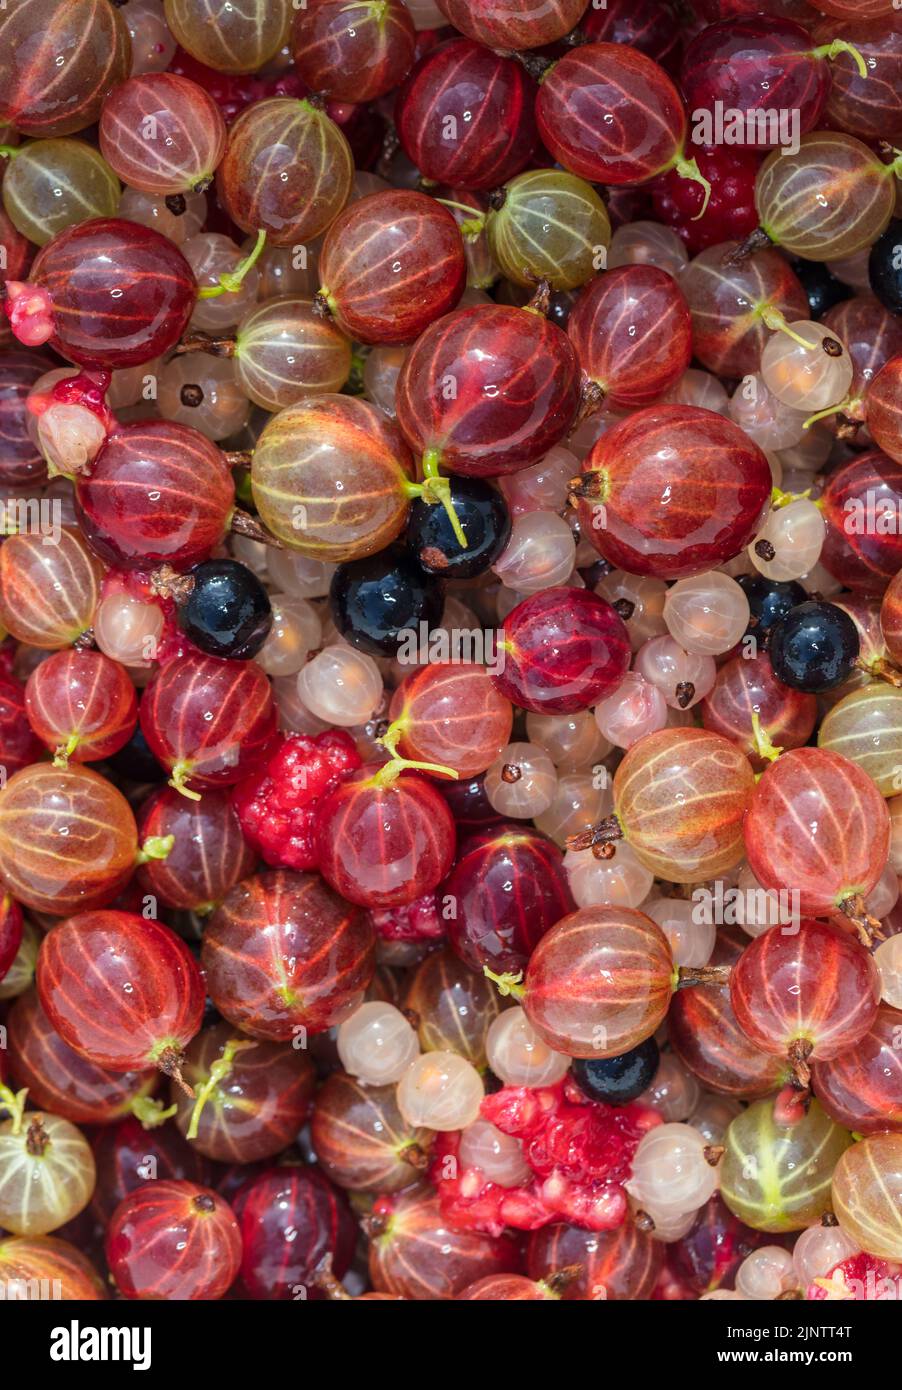 'Hinnonmäki Röd' Gooseberry, Krusbär (Ribes uva-crispa) Foto Stock